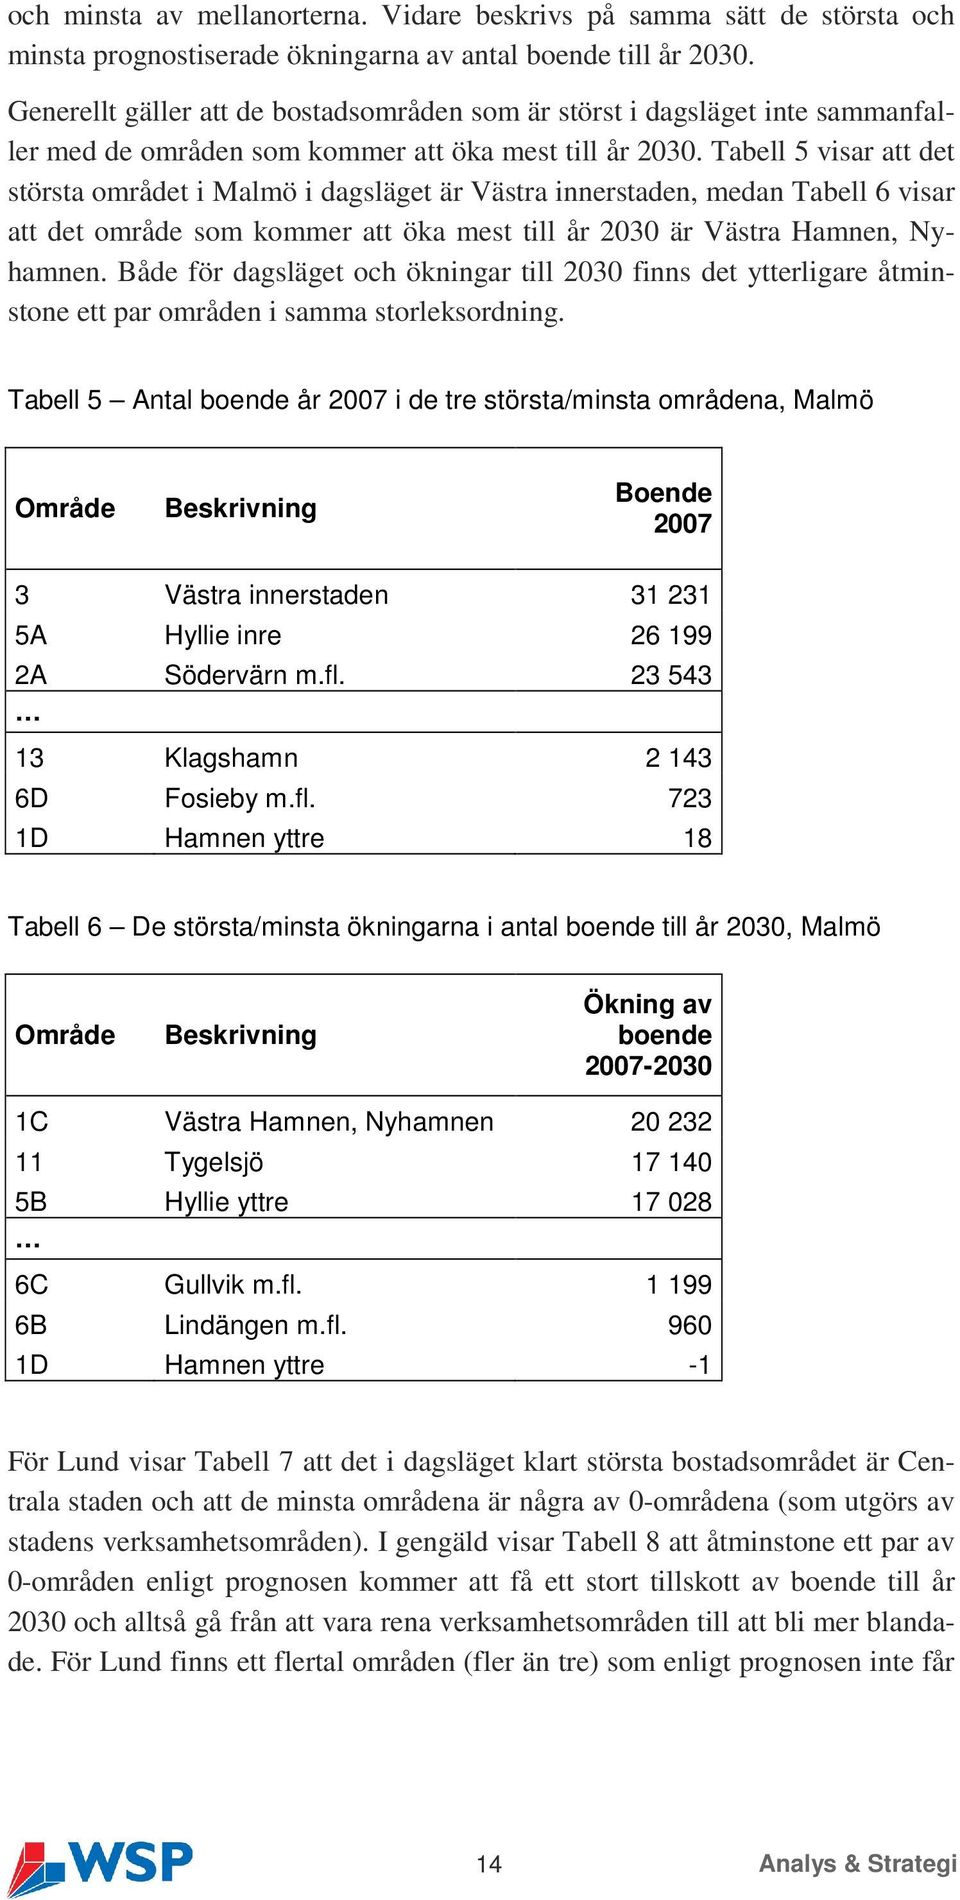 Tabell 5 visar att det största området i Malmö i dagsläget är Västra innerstaden, medan Tabell 6 visar att det område som kommer att öka mest till år 2030 är Västra Hamnen, Nyhamnen.